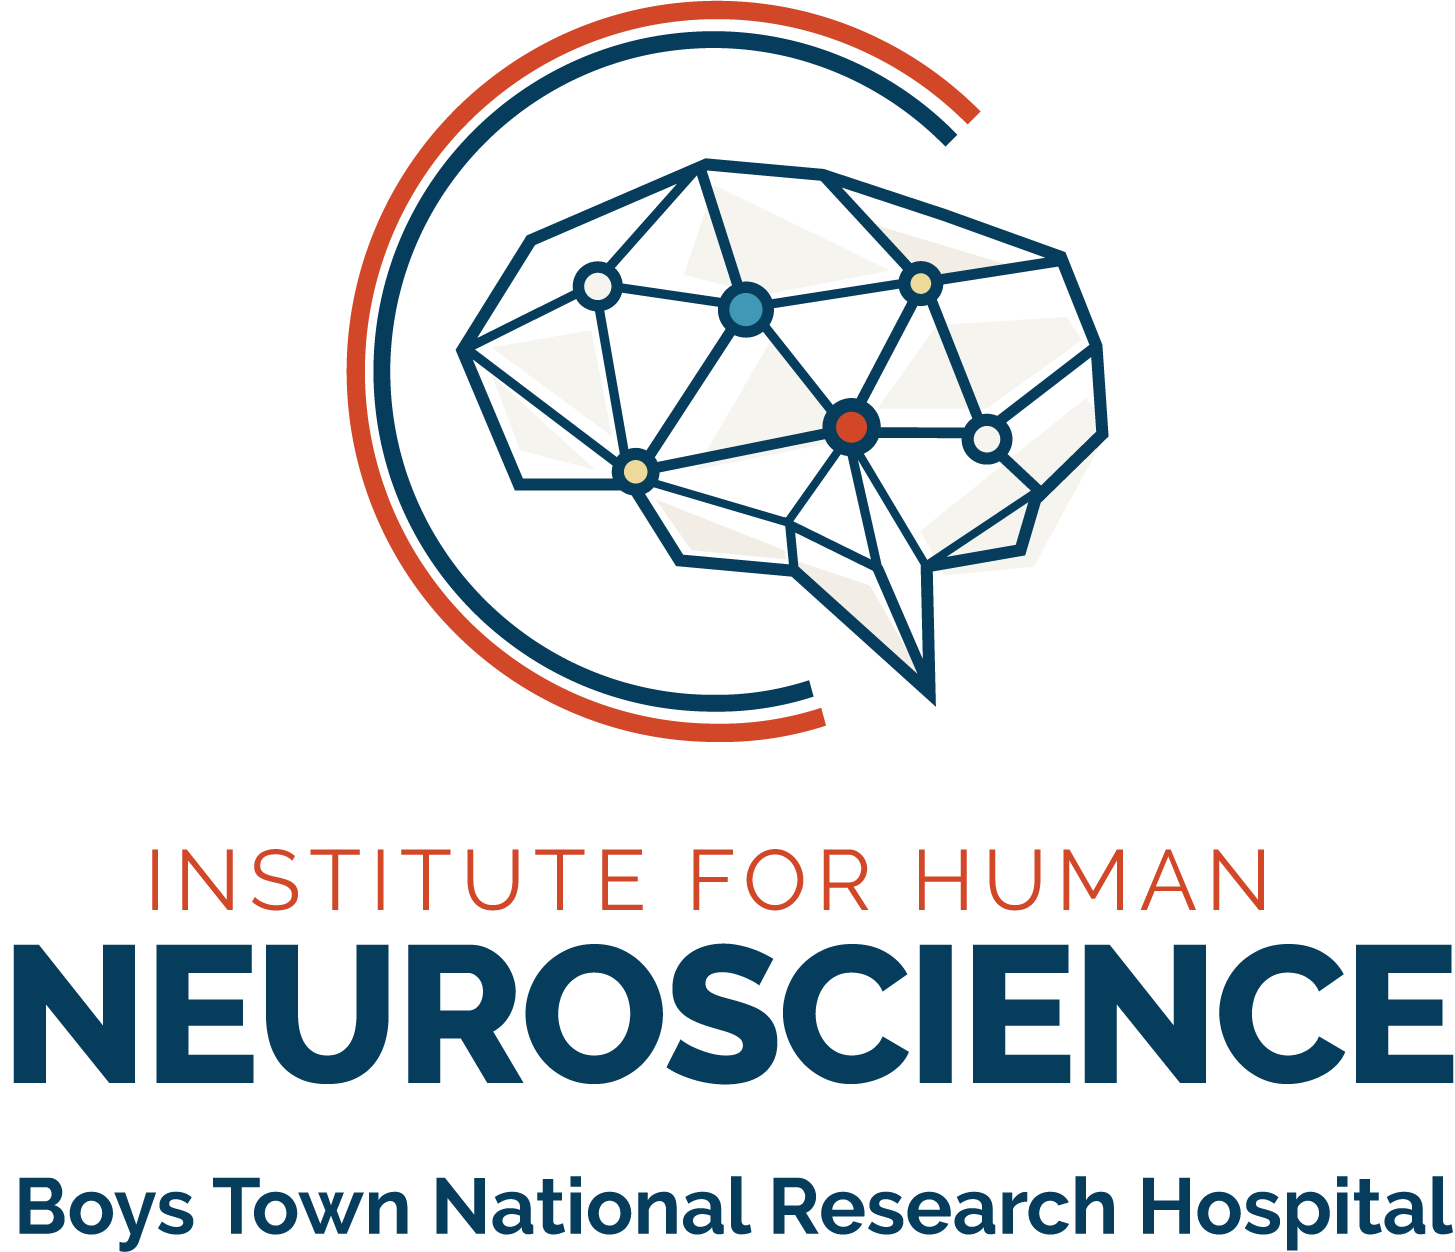 N. Laboratorio DICoN en el Instituto de Neurociencias Humanas, Investigación Nacional de Boys Town